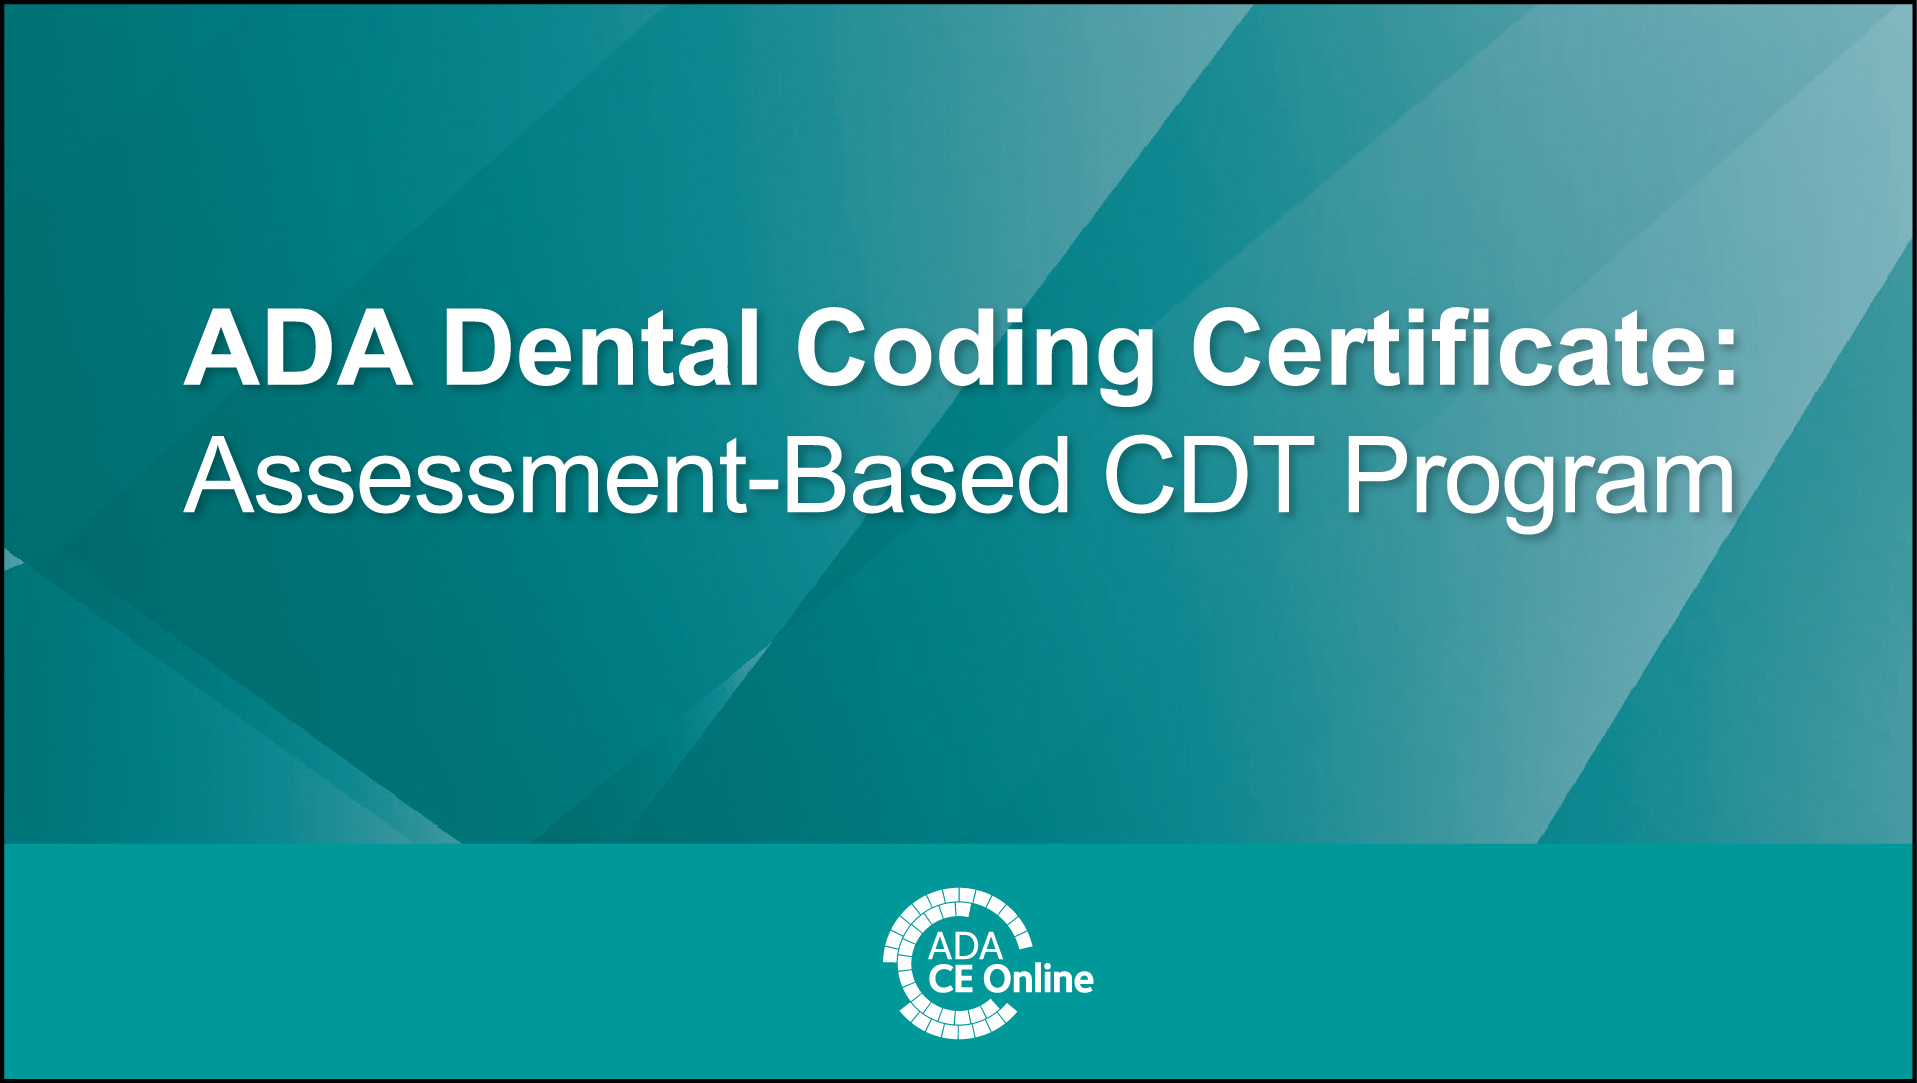 ADA Dental Coding Certificate: Assessment-Based CDT Program (books not included)